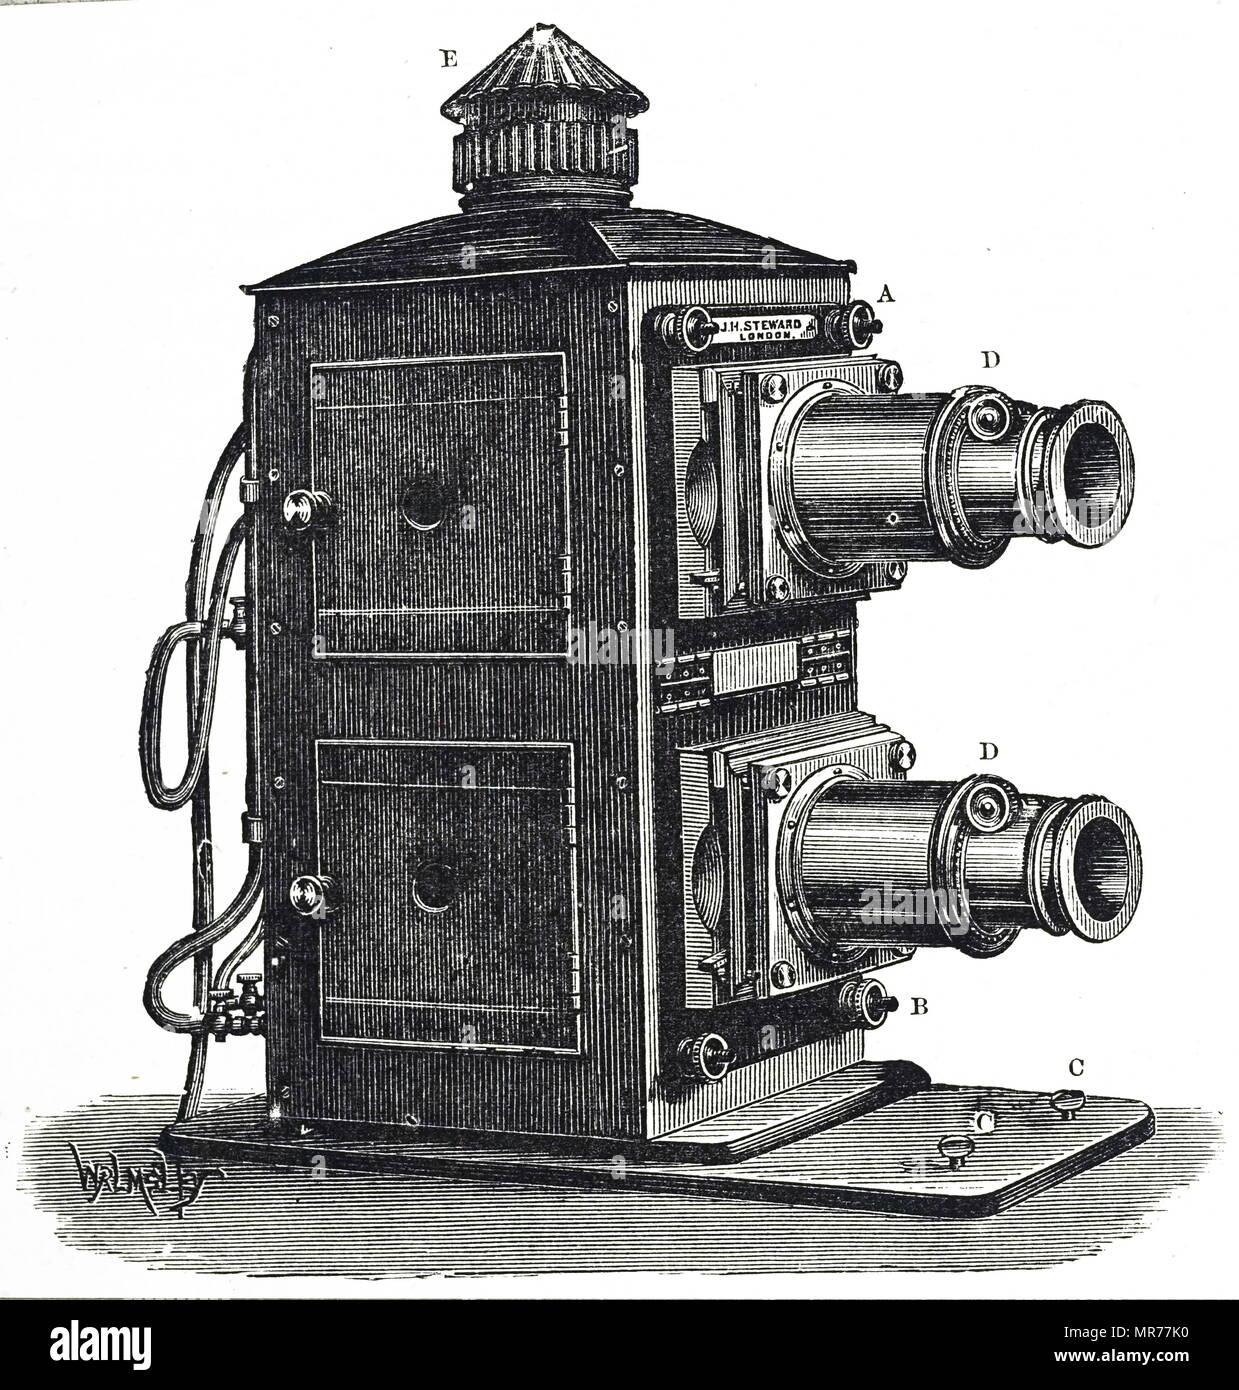 Kupferstich mit der Darstellung eines Biunial Laterne, eine magische Laterne mit zwei separaten Projektionssysteme, die eine über der anderen platziert sind. Vom 19. Jahrhundert Stockfoto